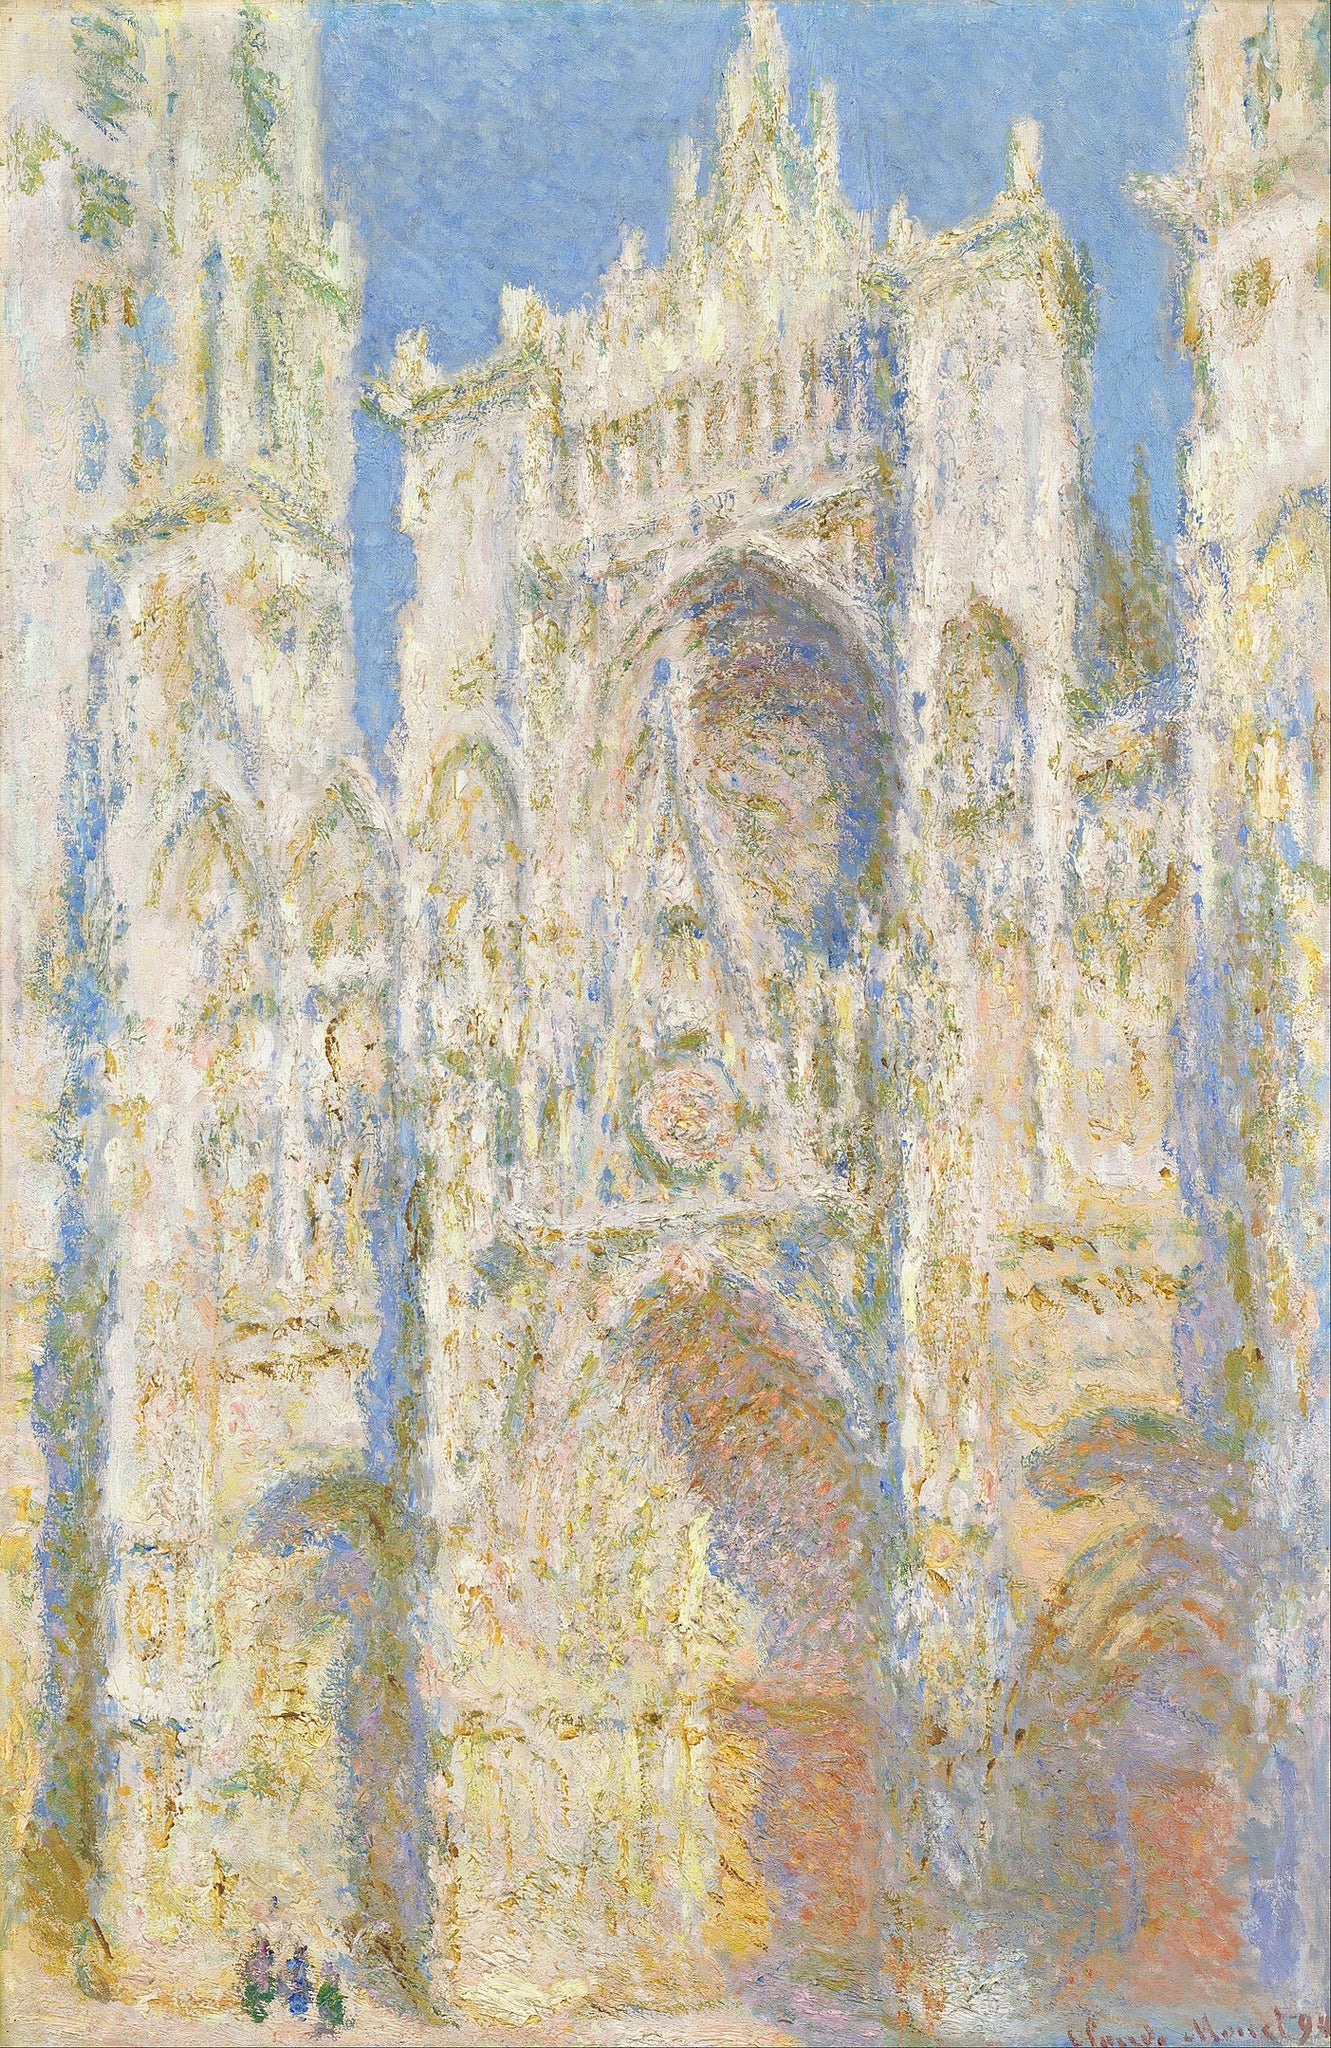 Cathédrale de Rouen, façade ouest, au soleil (W1324) - Claude Monet